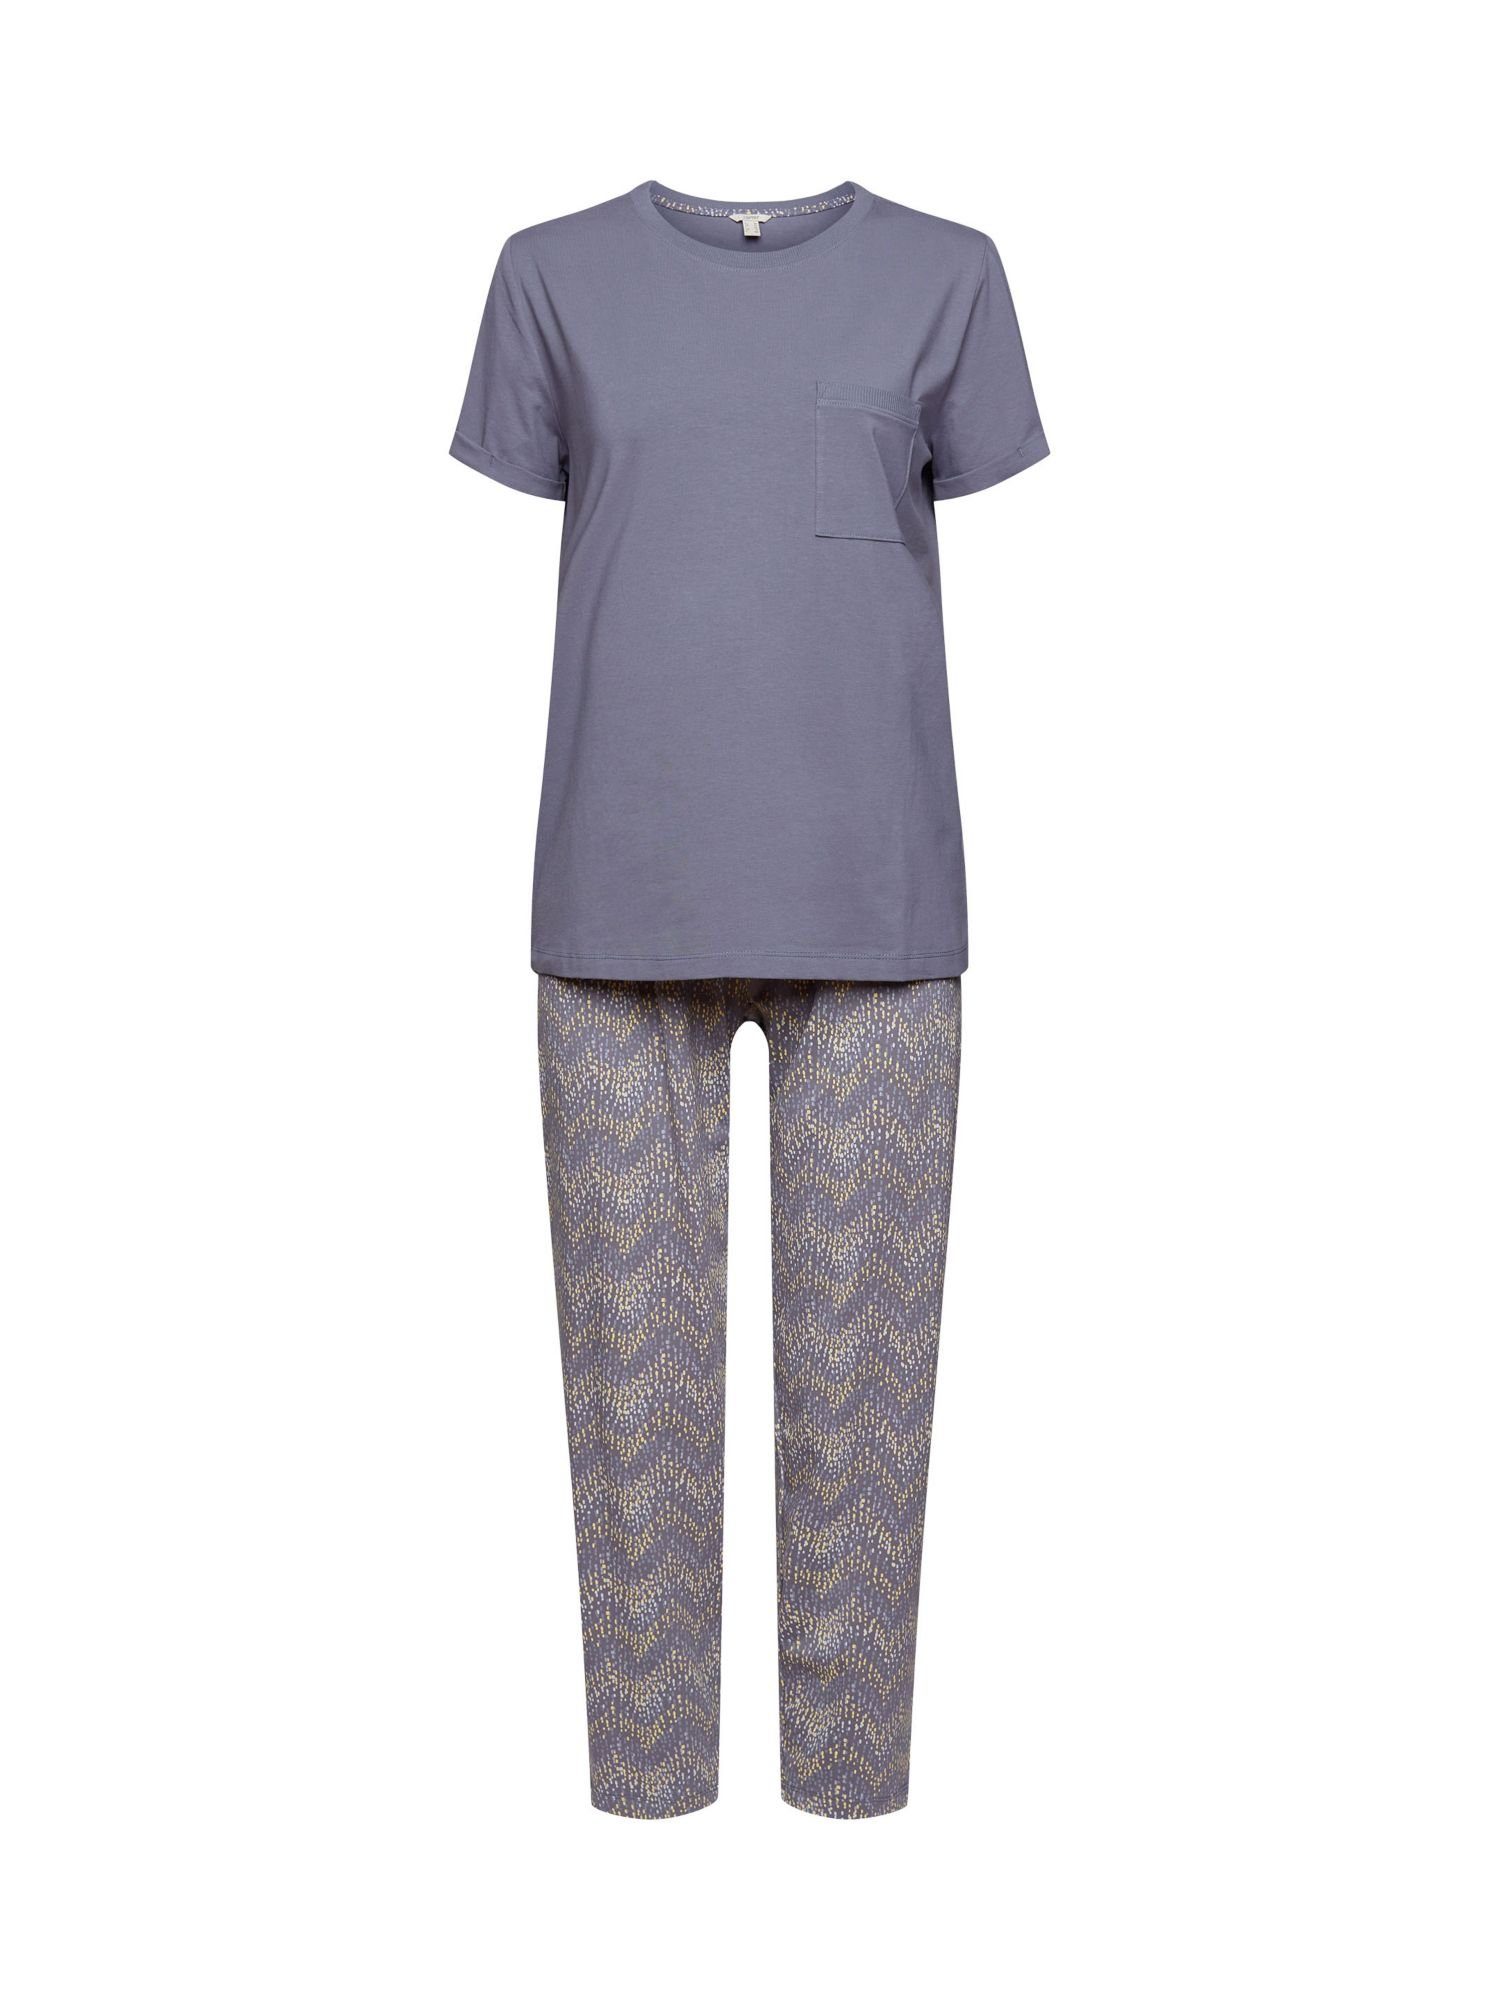 Esprit Damen Pyjamas online kaufen » Esprit Schlafanzug | OTTO